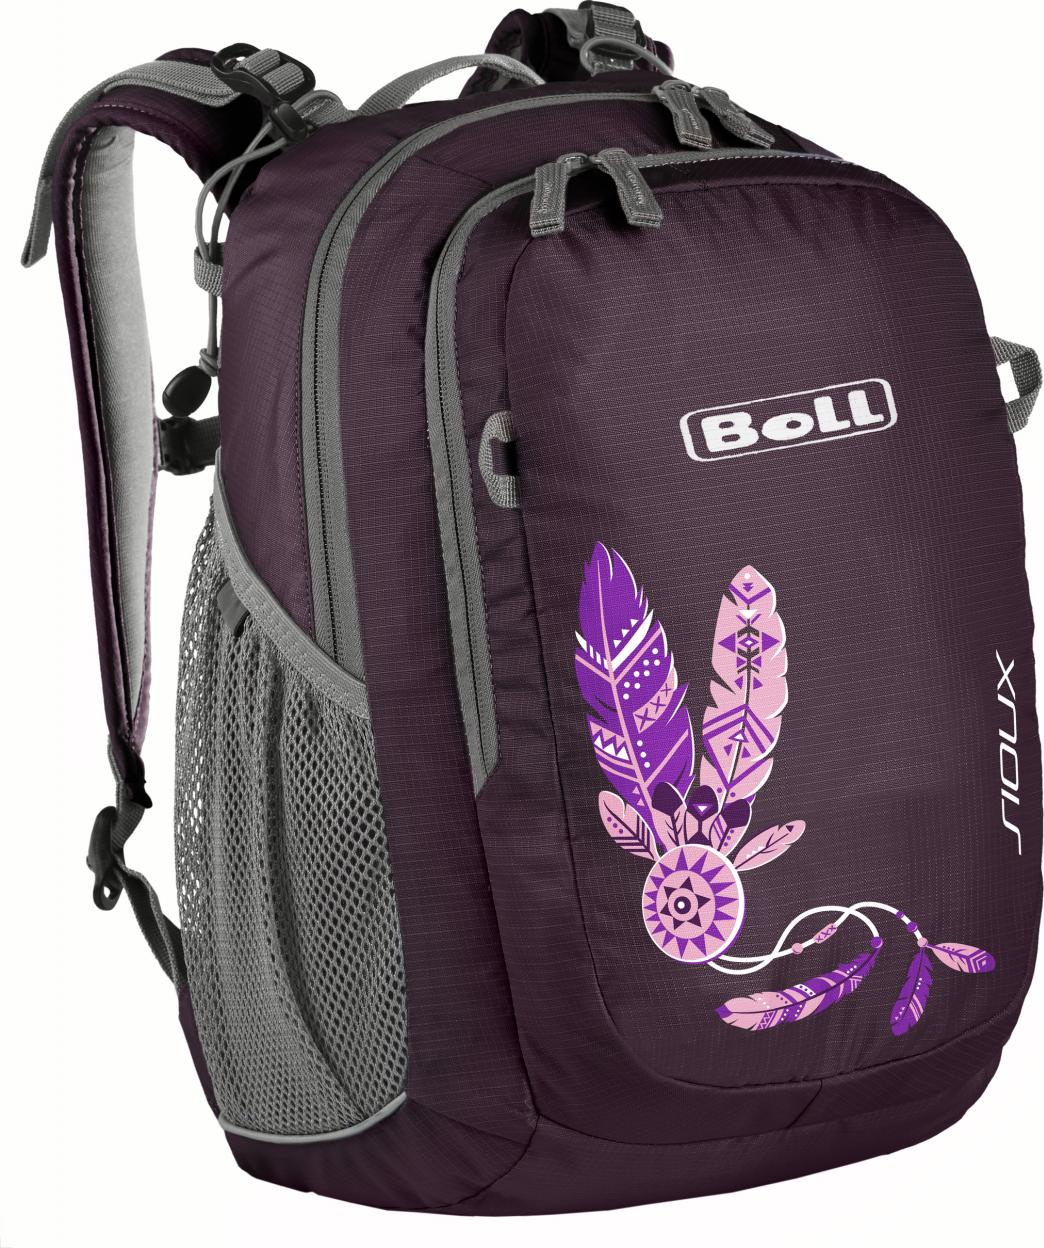 Boll SIOUX 15 - purple